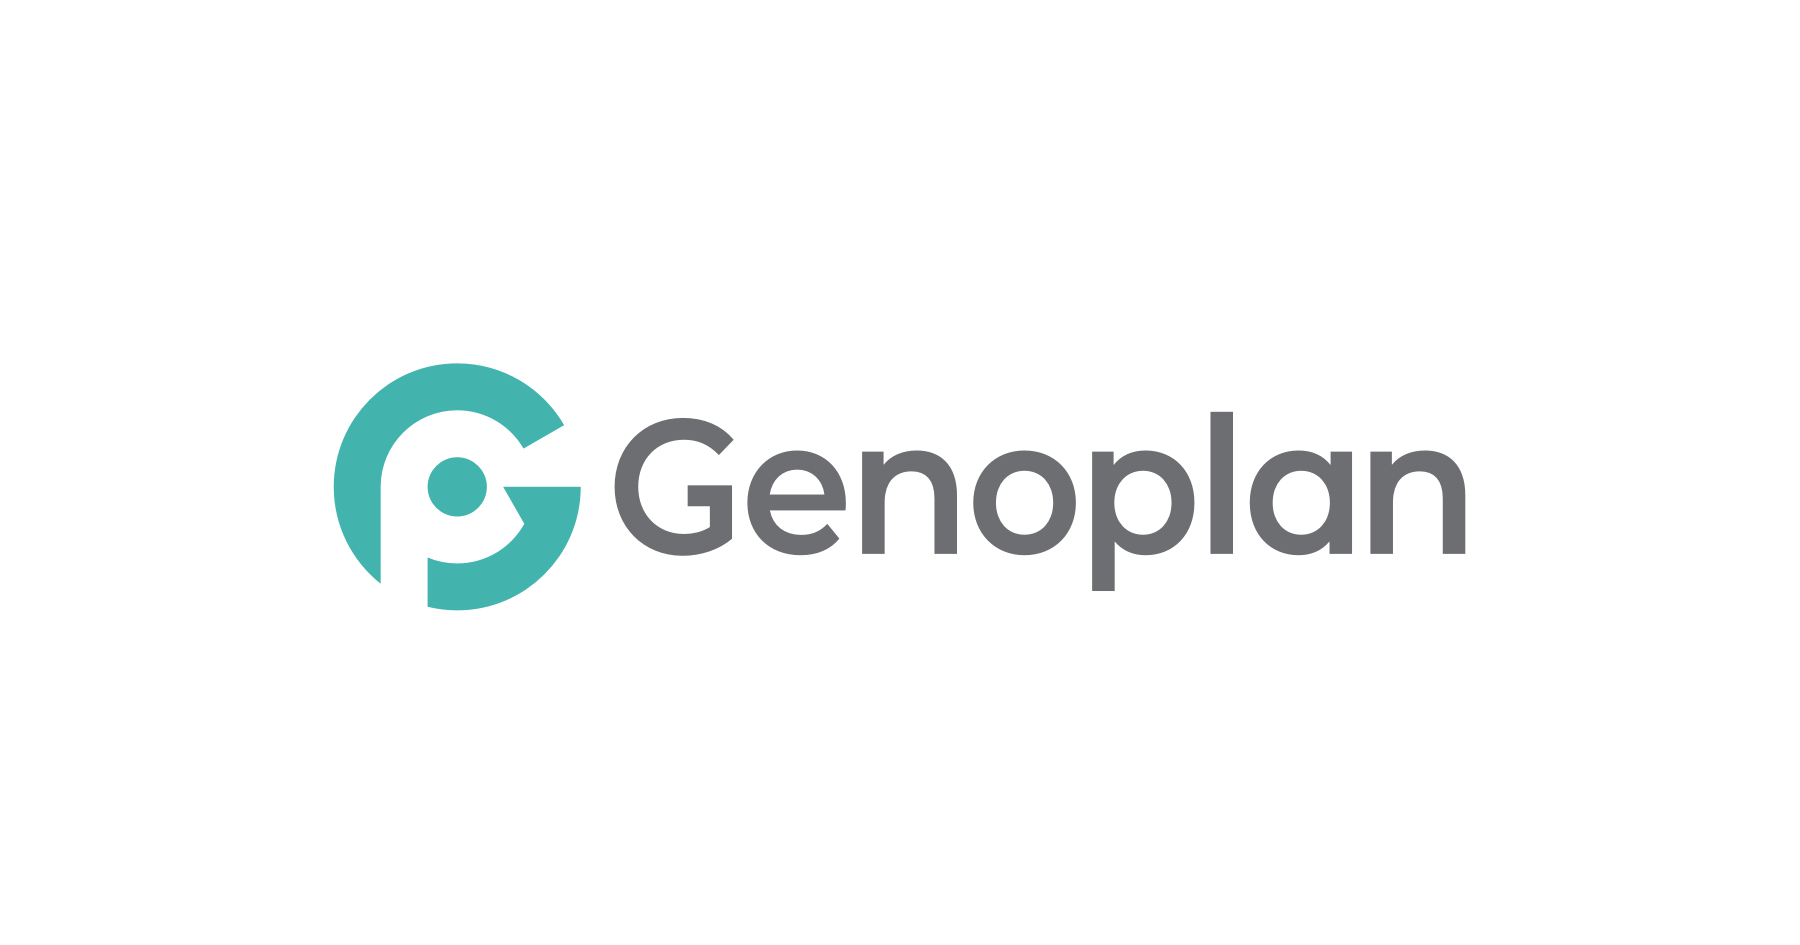 ジェノプラン - Genoplan